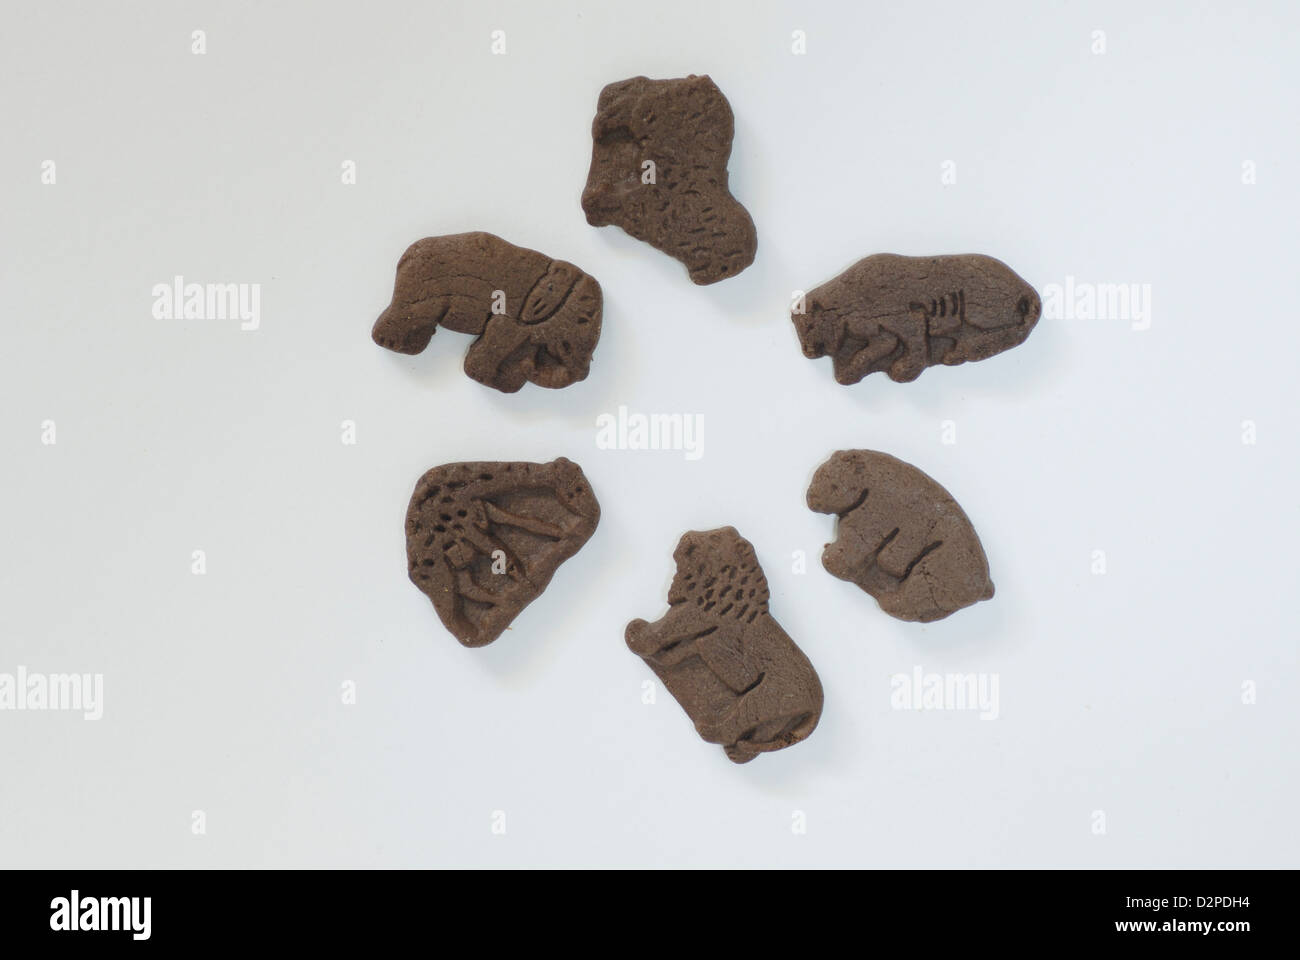 Les cookies au chocolat en forme d'animaux sur fond blanc avec des ombres, l'éléphant, l'agneau, le couguar, l'ours, le lion, la girafe de formes Banque D'Images